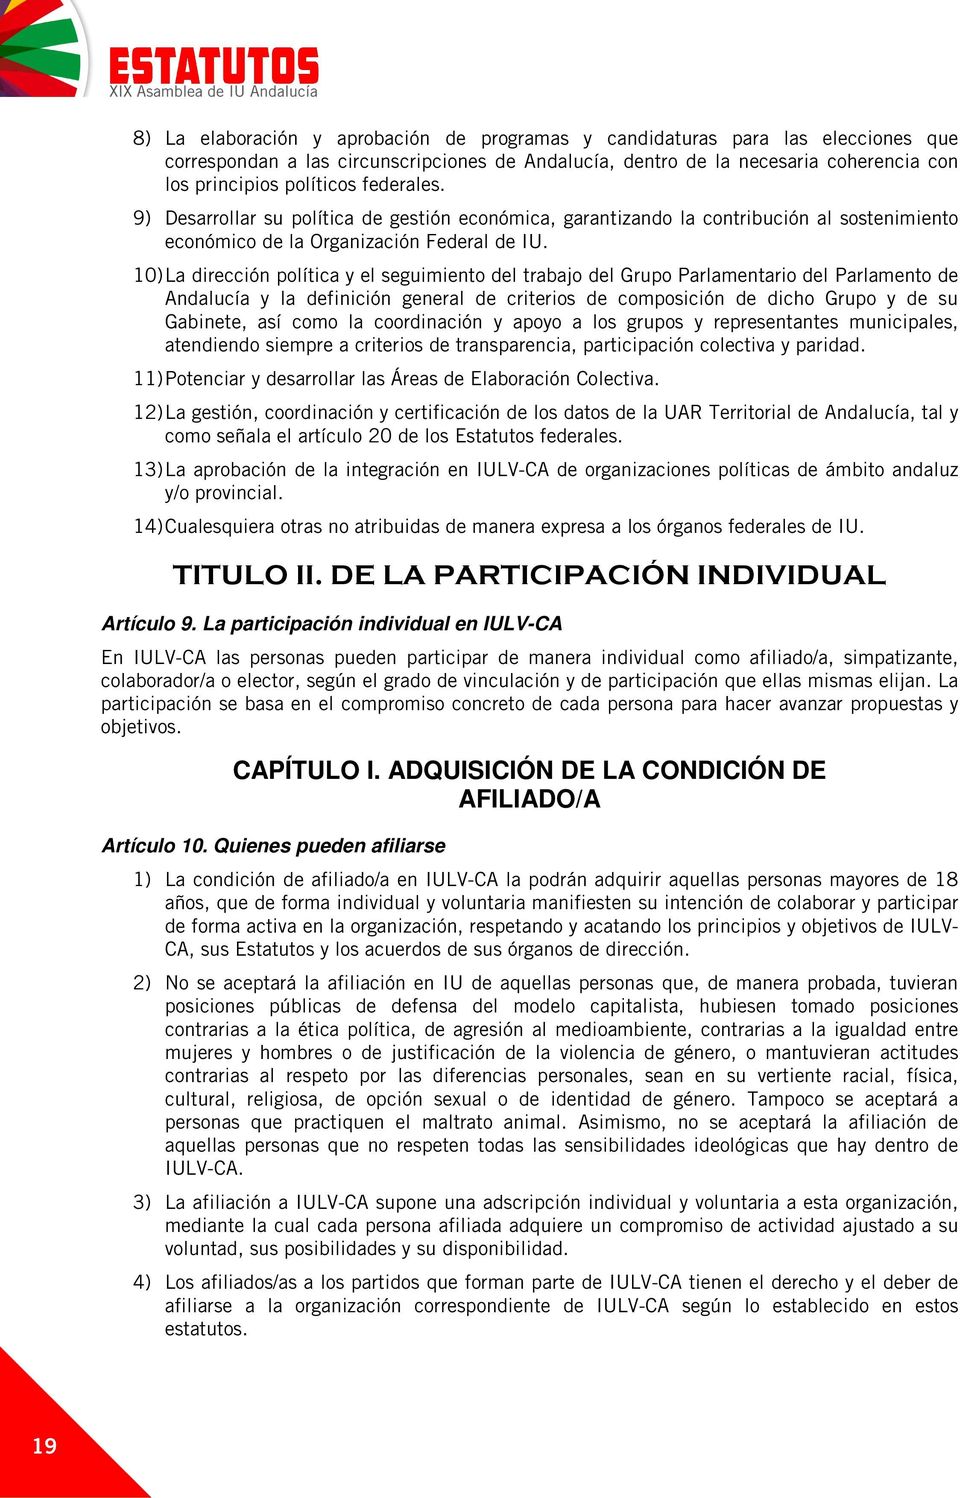 10) La dirección política y el seguimiento del trabajo del Grupo Parlamentario del Parlamento de Andalucía y la definición general de criterios de composición de dicho Grupo y de su Gabinete, así